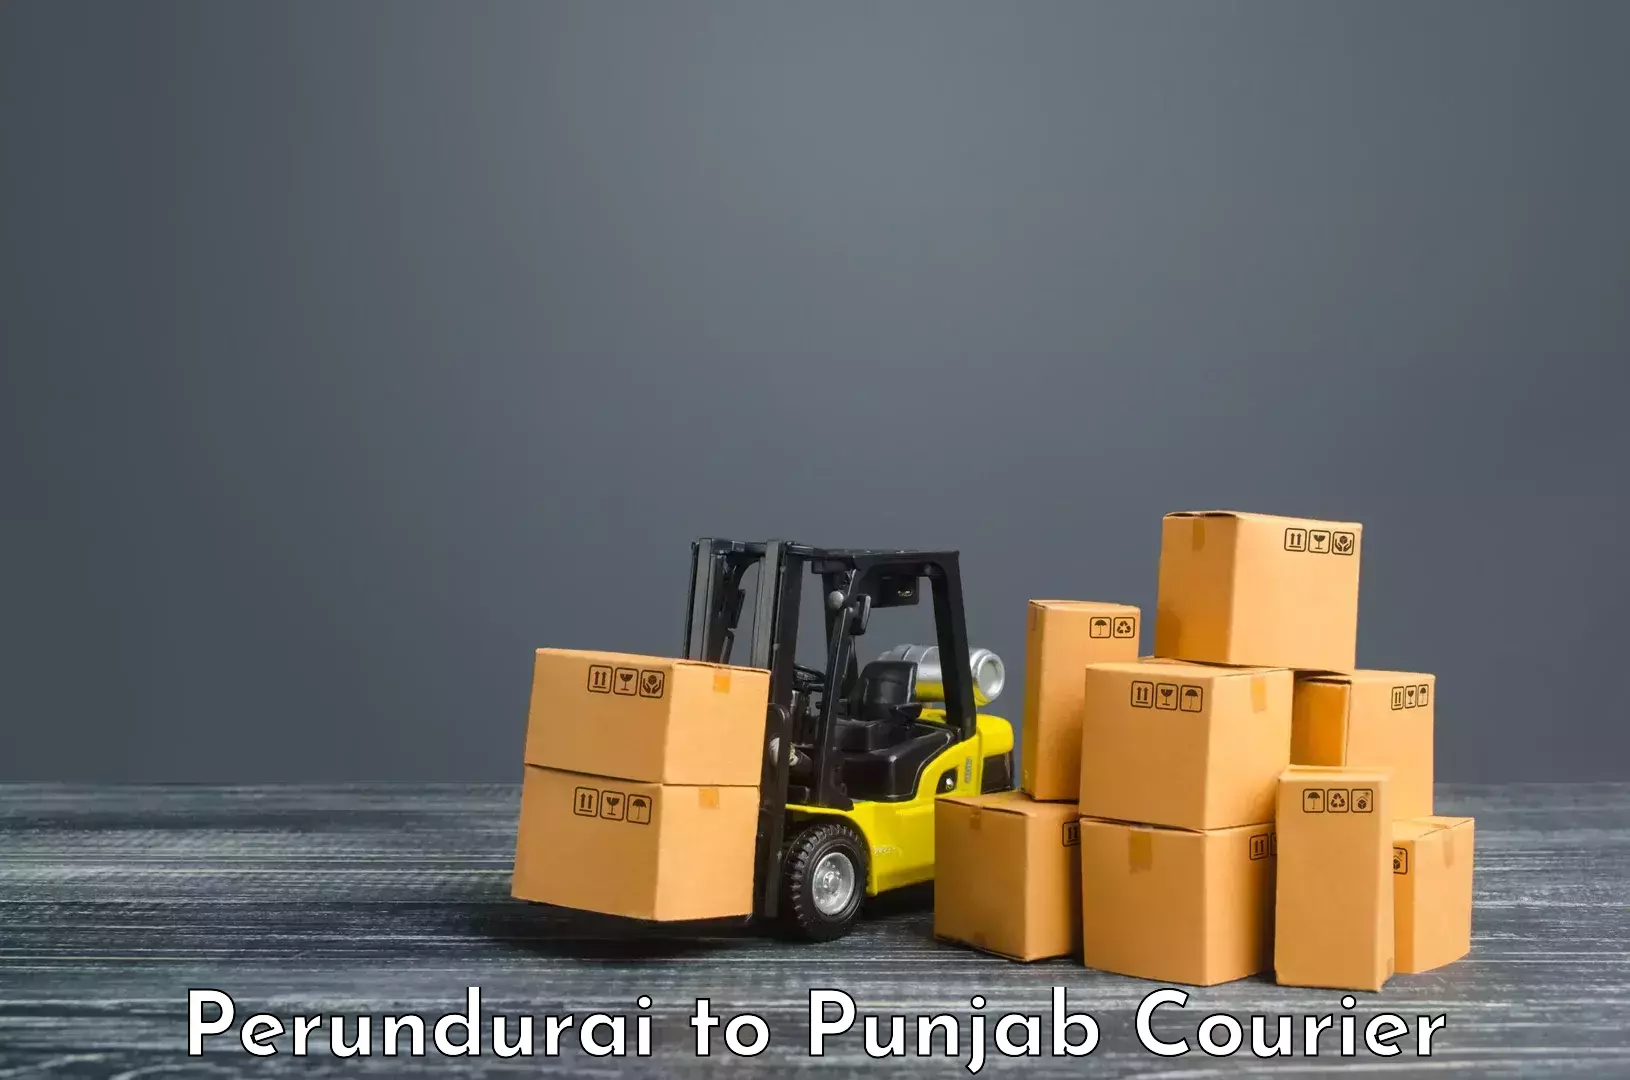 Versatile courier offerings Perundurai to Dhuri